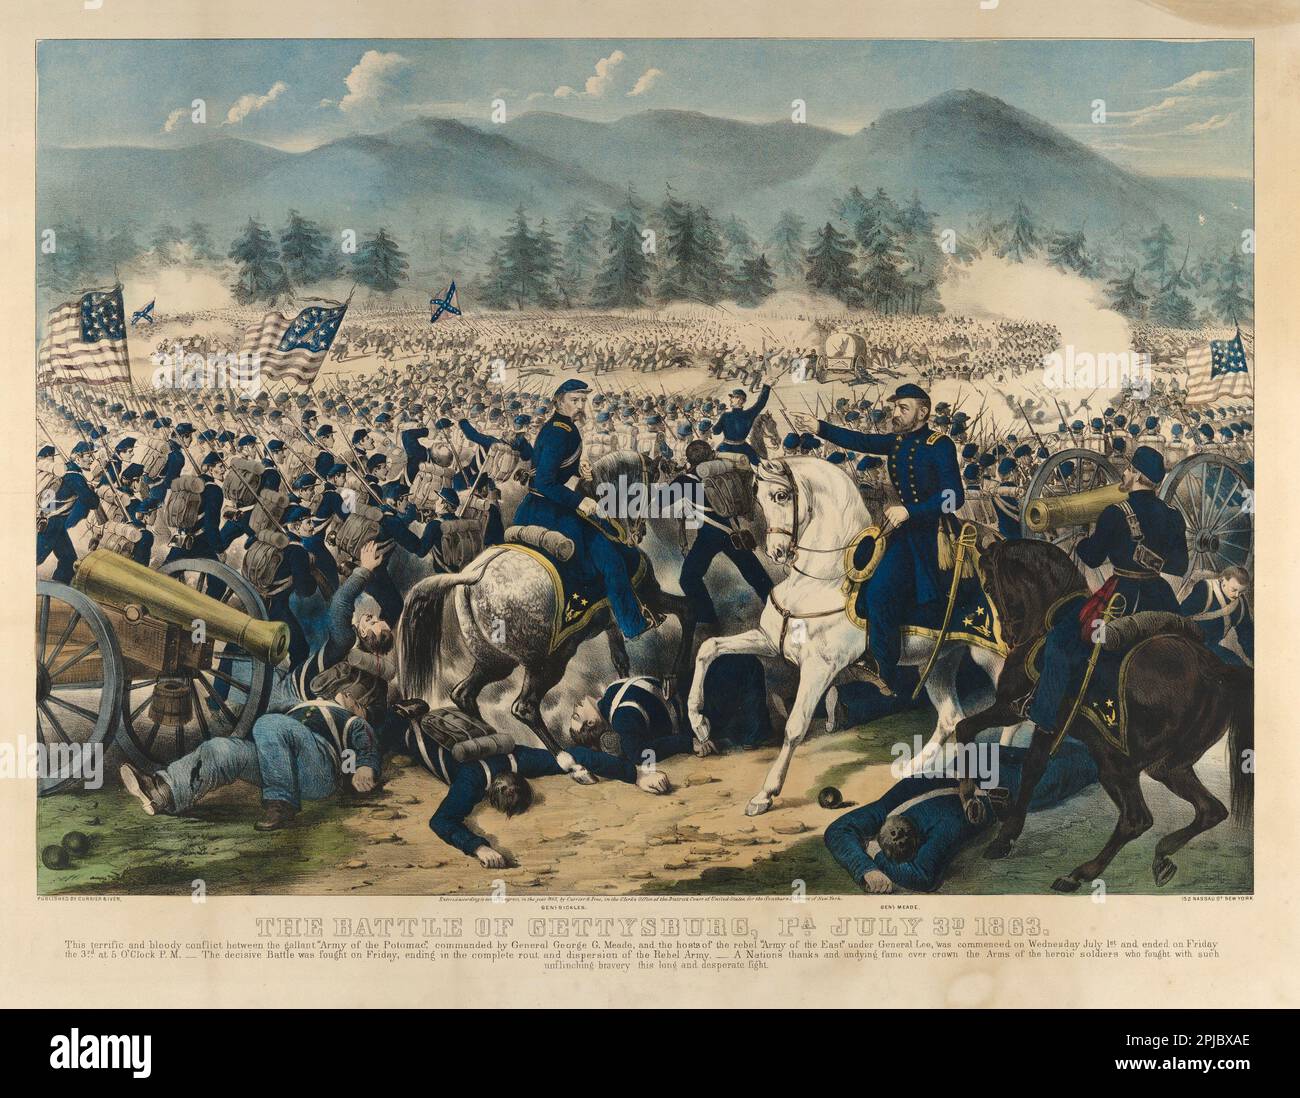 Eine Illustration von General Meade und General Sickles in der Schlacht von Gettysburg während des Amerikanischen Bürgerkriegs Stockfoto